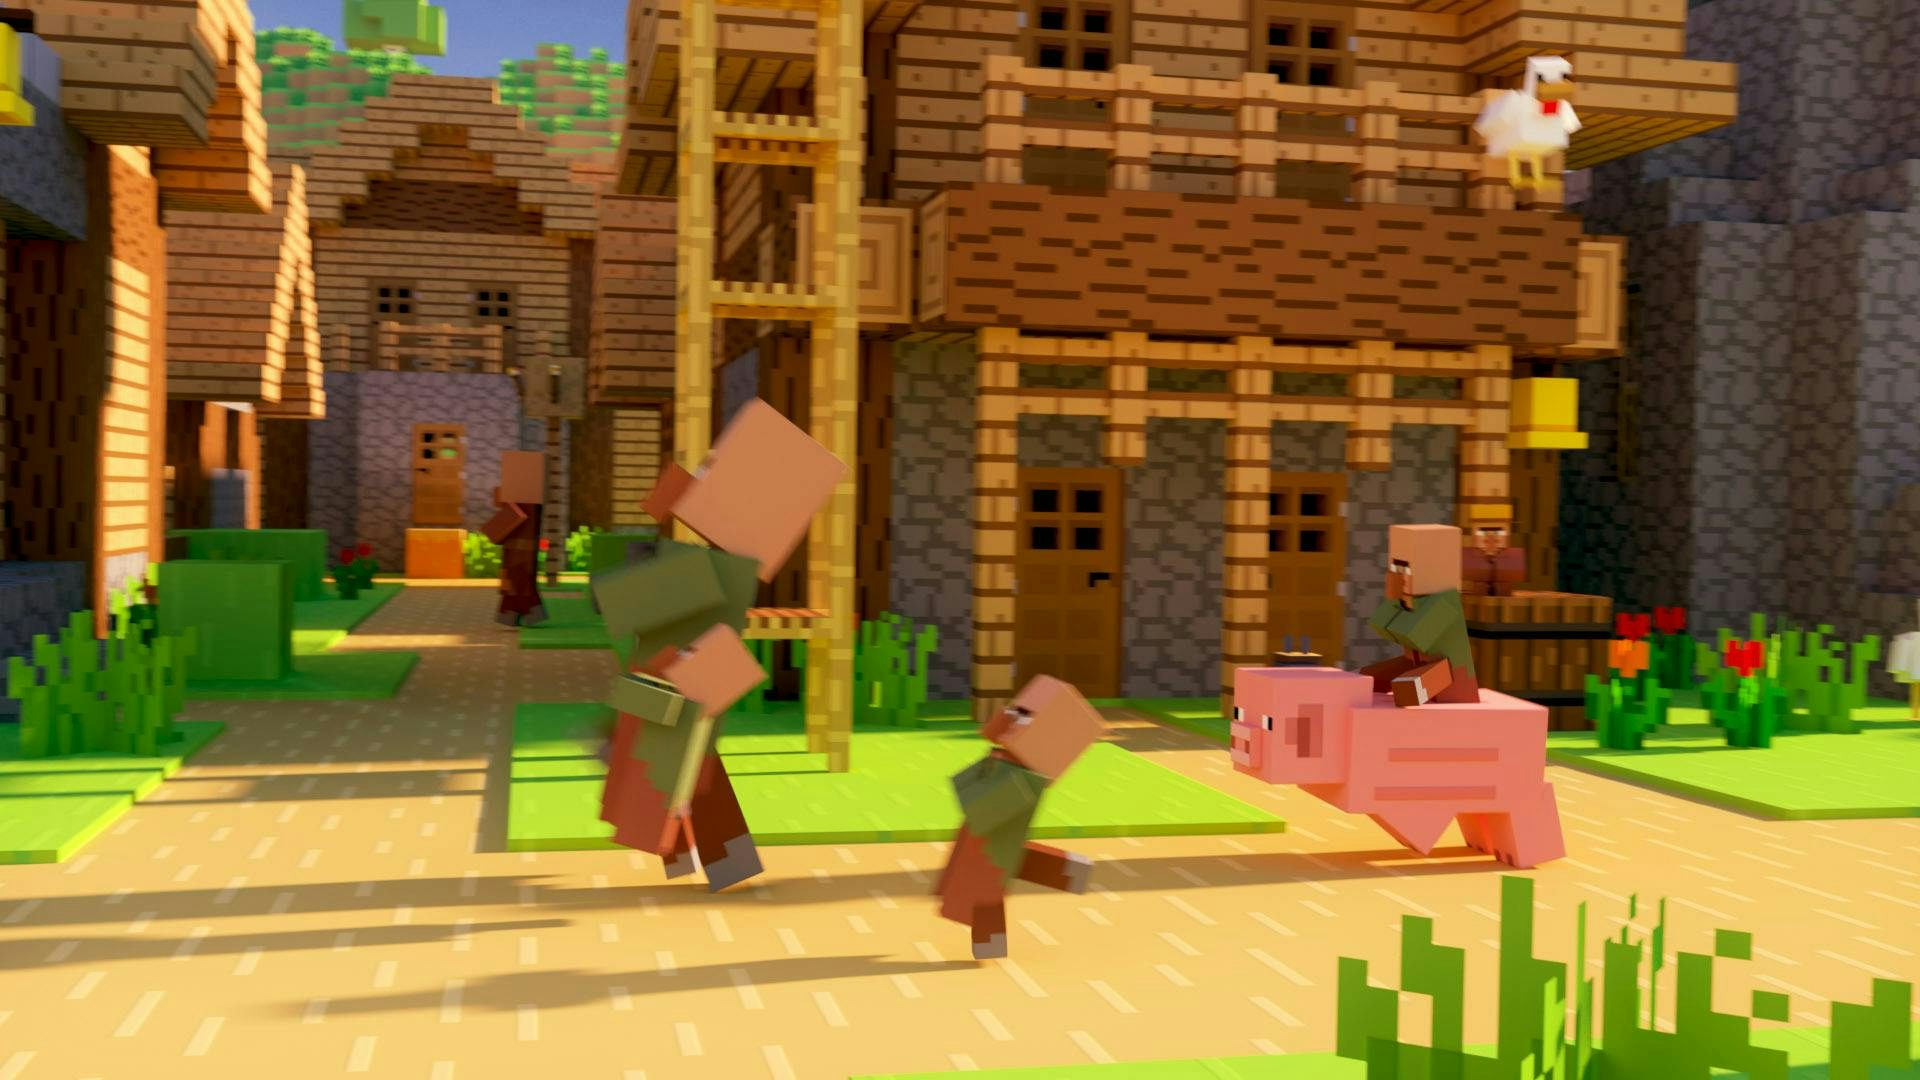 å baby villagers och en villager jagas av en baby villager som rider på en gris.